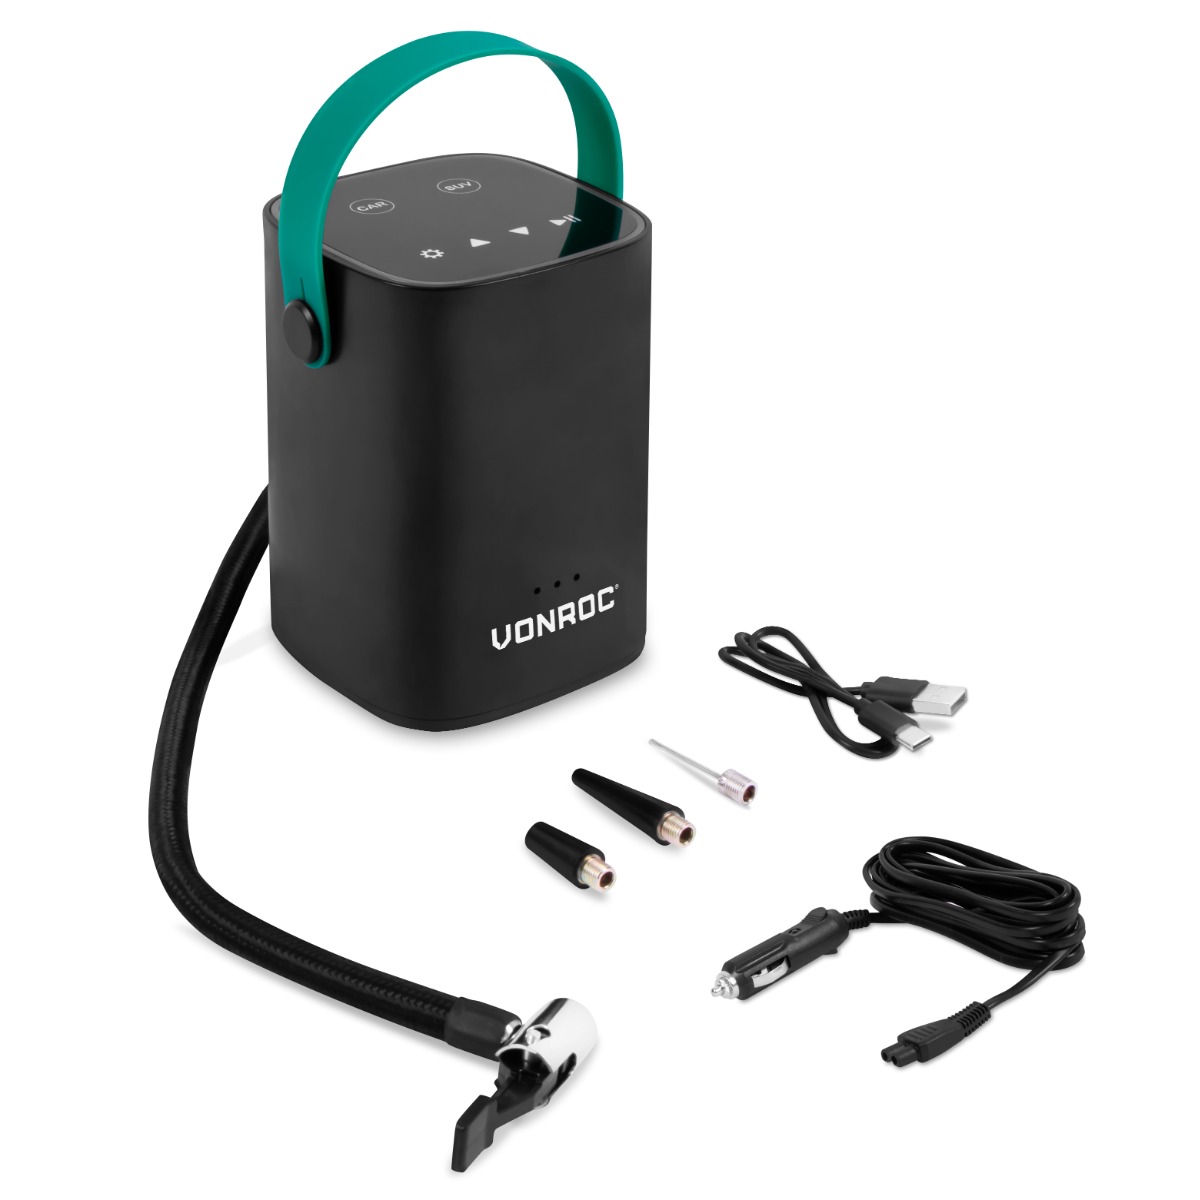 VONROC Compressore portatile mini 12V 10 bar / 145 PSI per auto, moto e  bici. Con batteria integrata da 2.0Ah. Display digitale / manometro